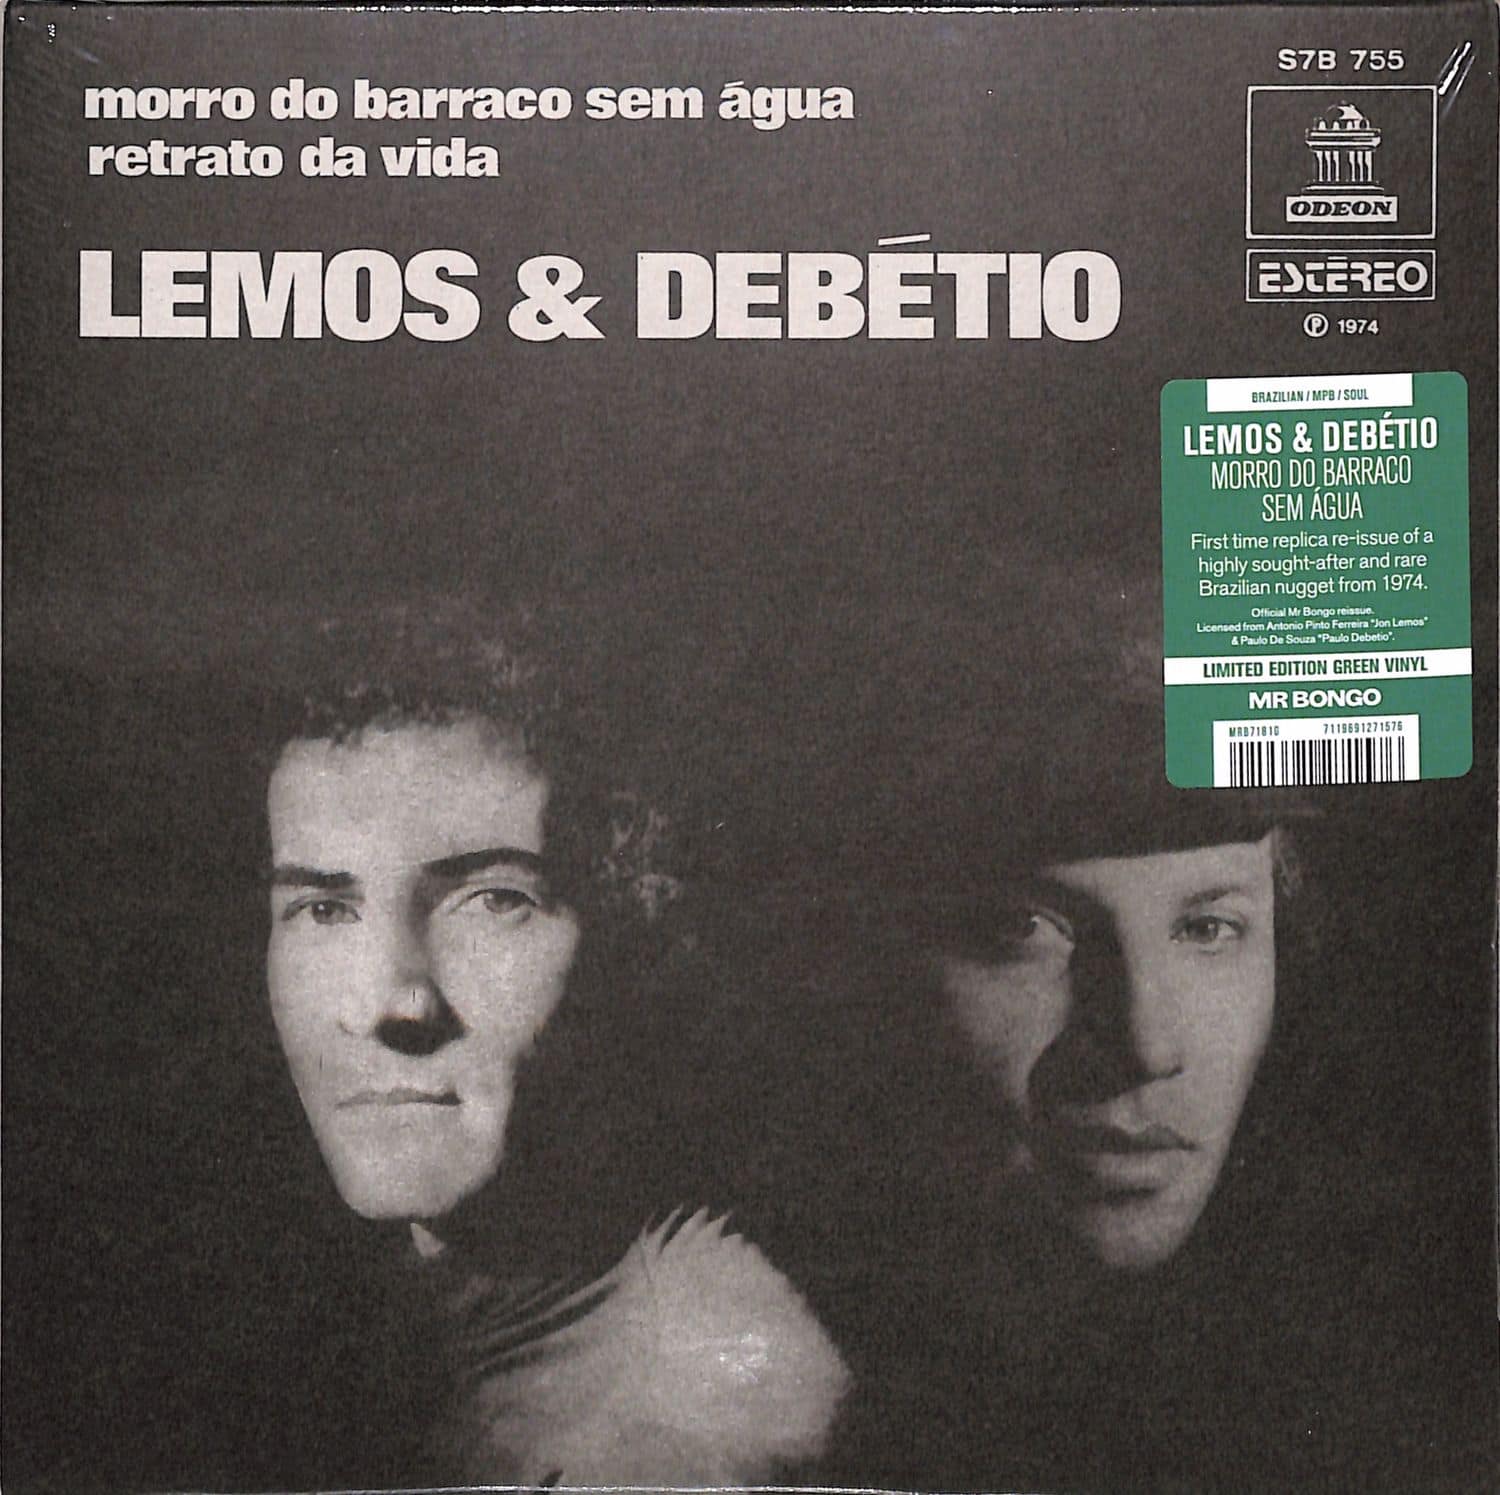 Lemos & Debetio - MORRO DO BARRACO SEM AGUA 